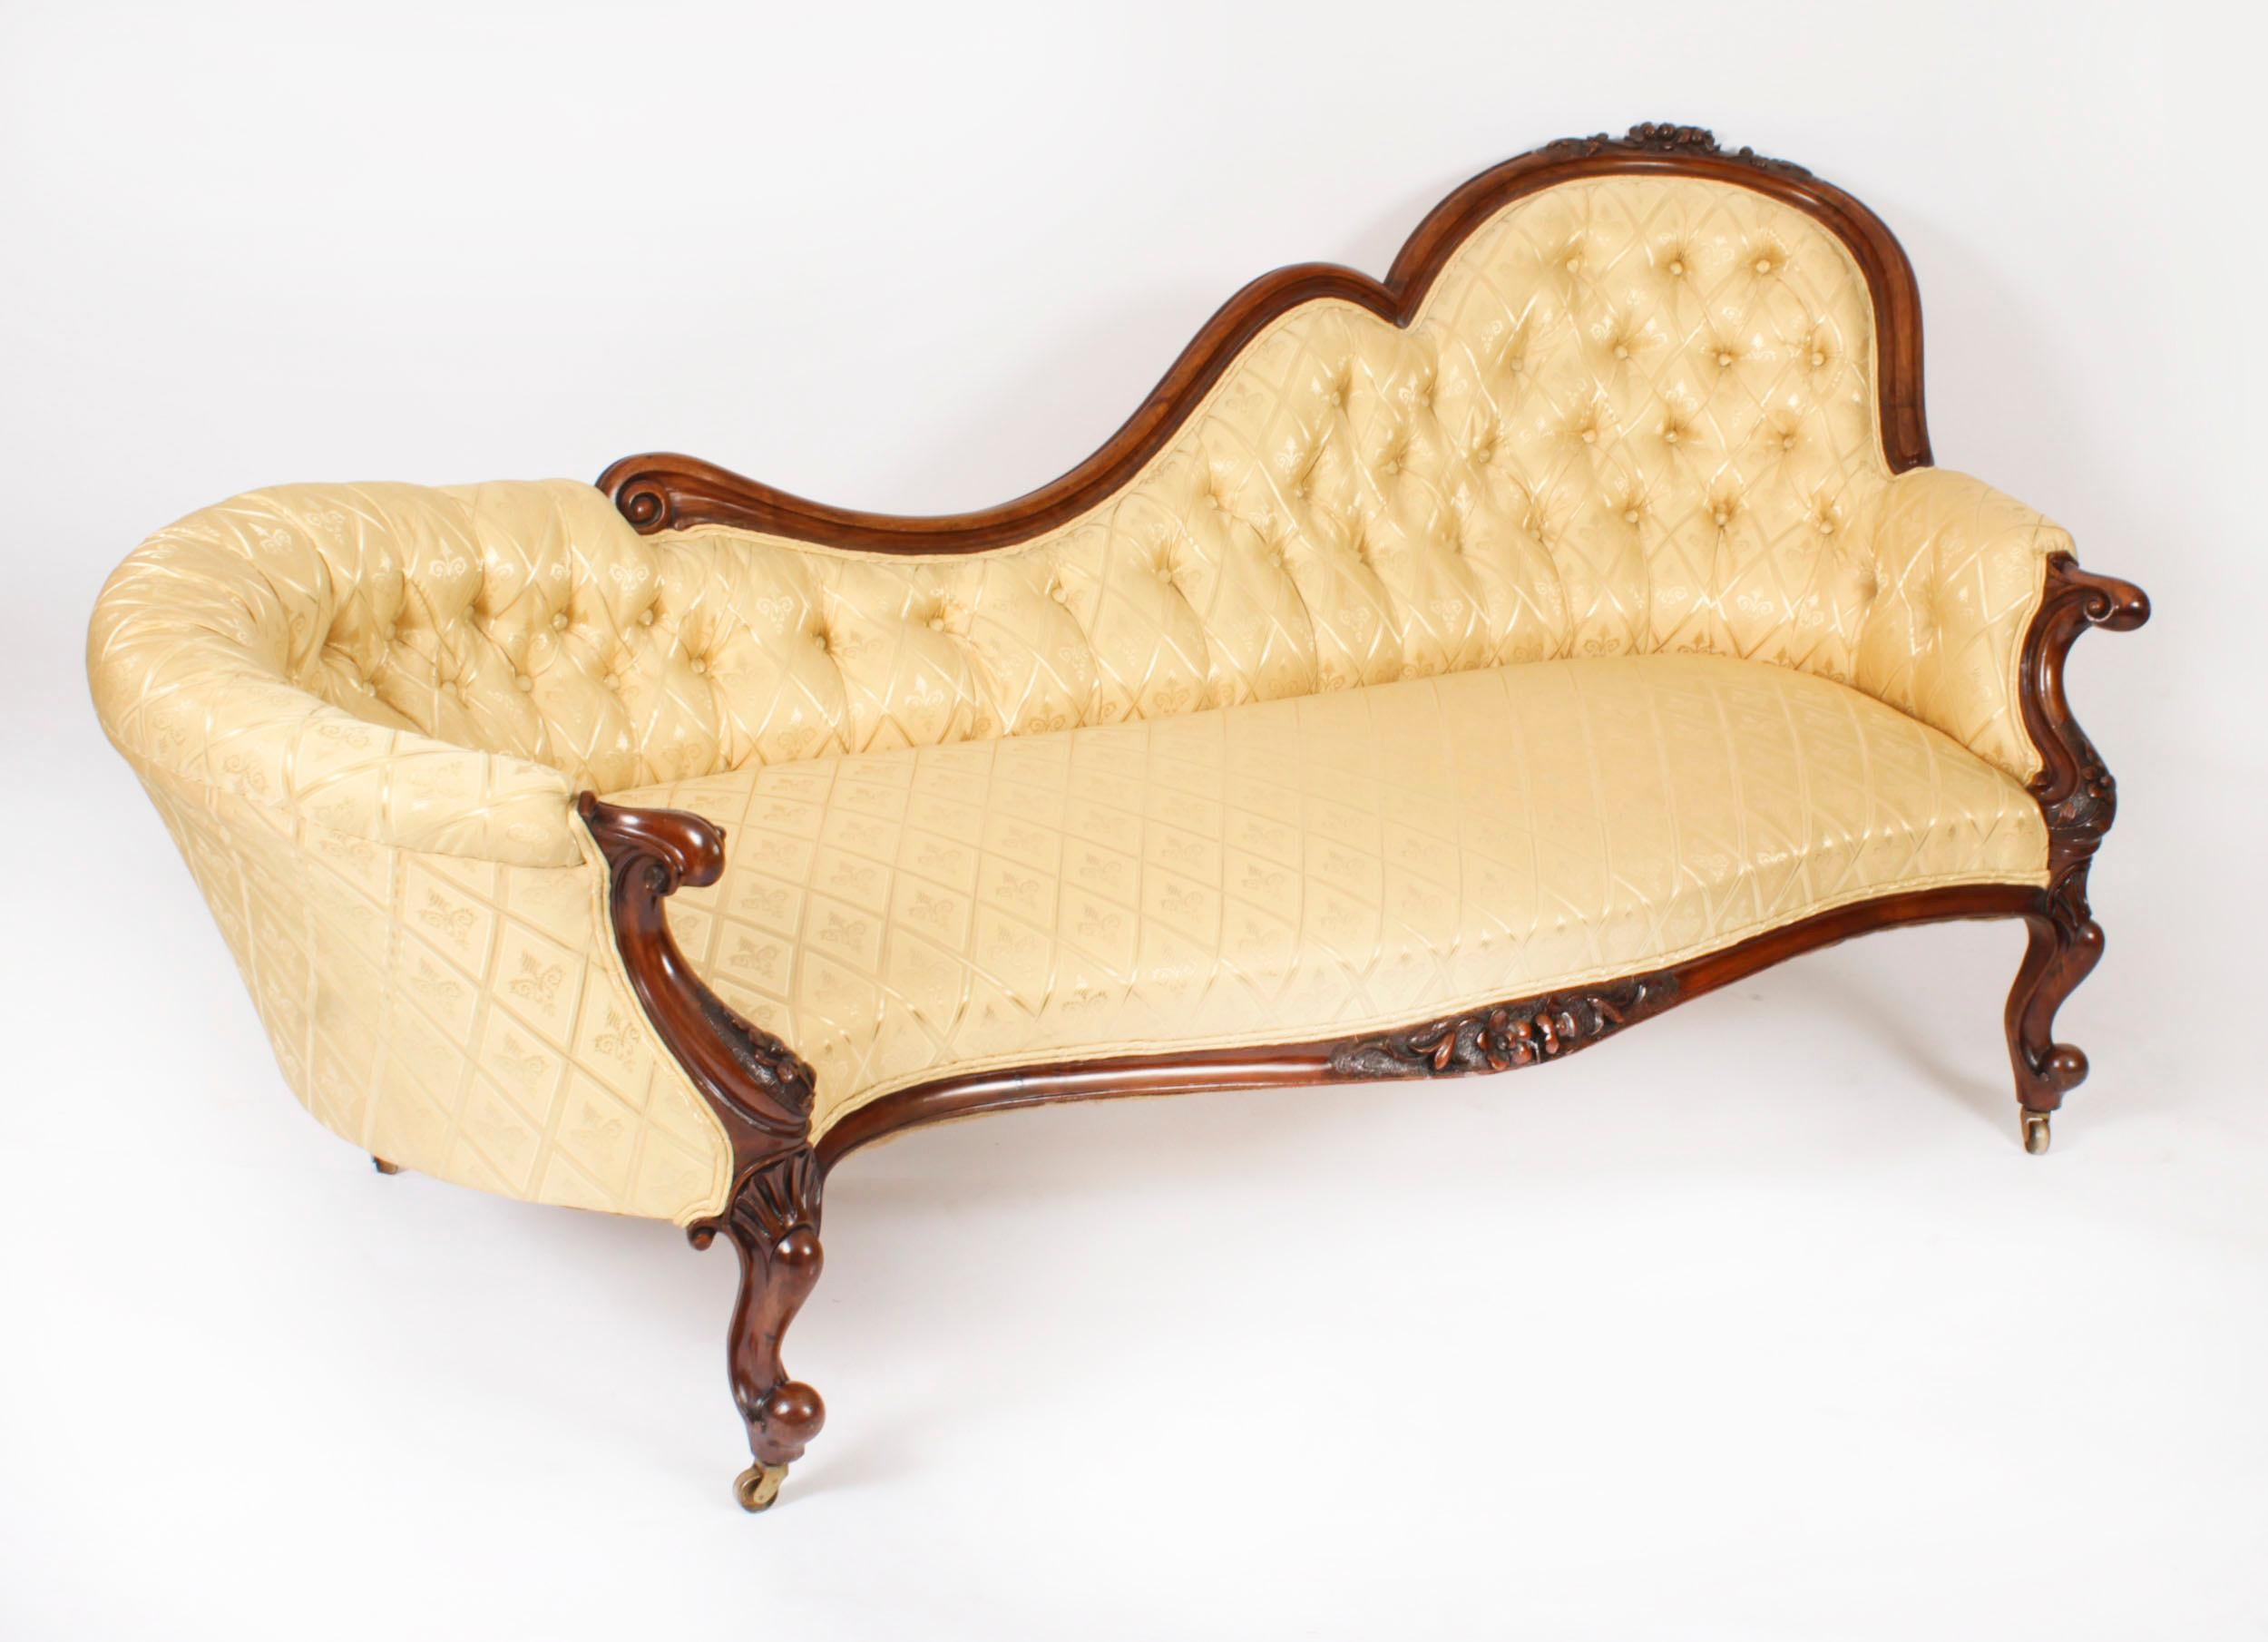 Il s'agit d'une fantastique chaise longue victorienne ancienne datant d'environ 1860.

Ce canapé a été fabriqué en noyer massif sculpté à la main avec des décorations florales sculptées et repose sur d'élégants pieds cabriole sculptés qui se